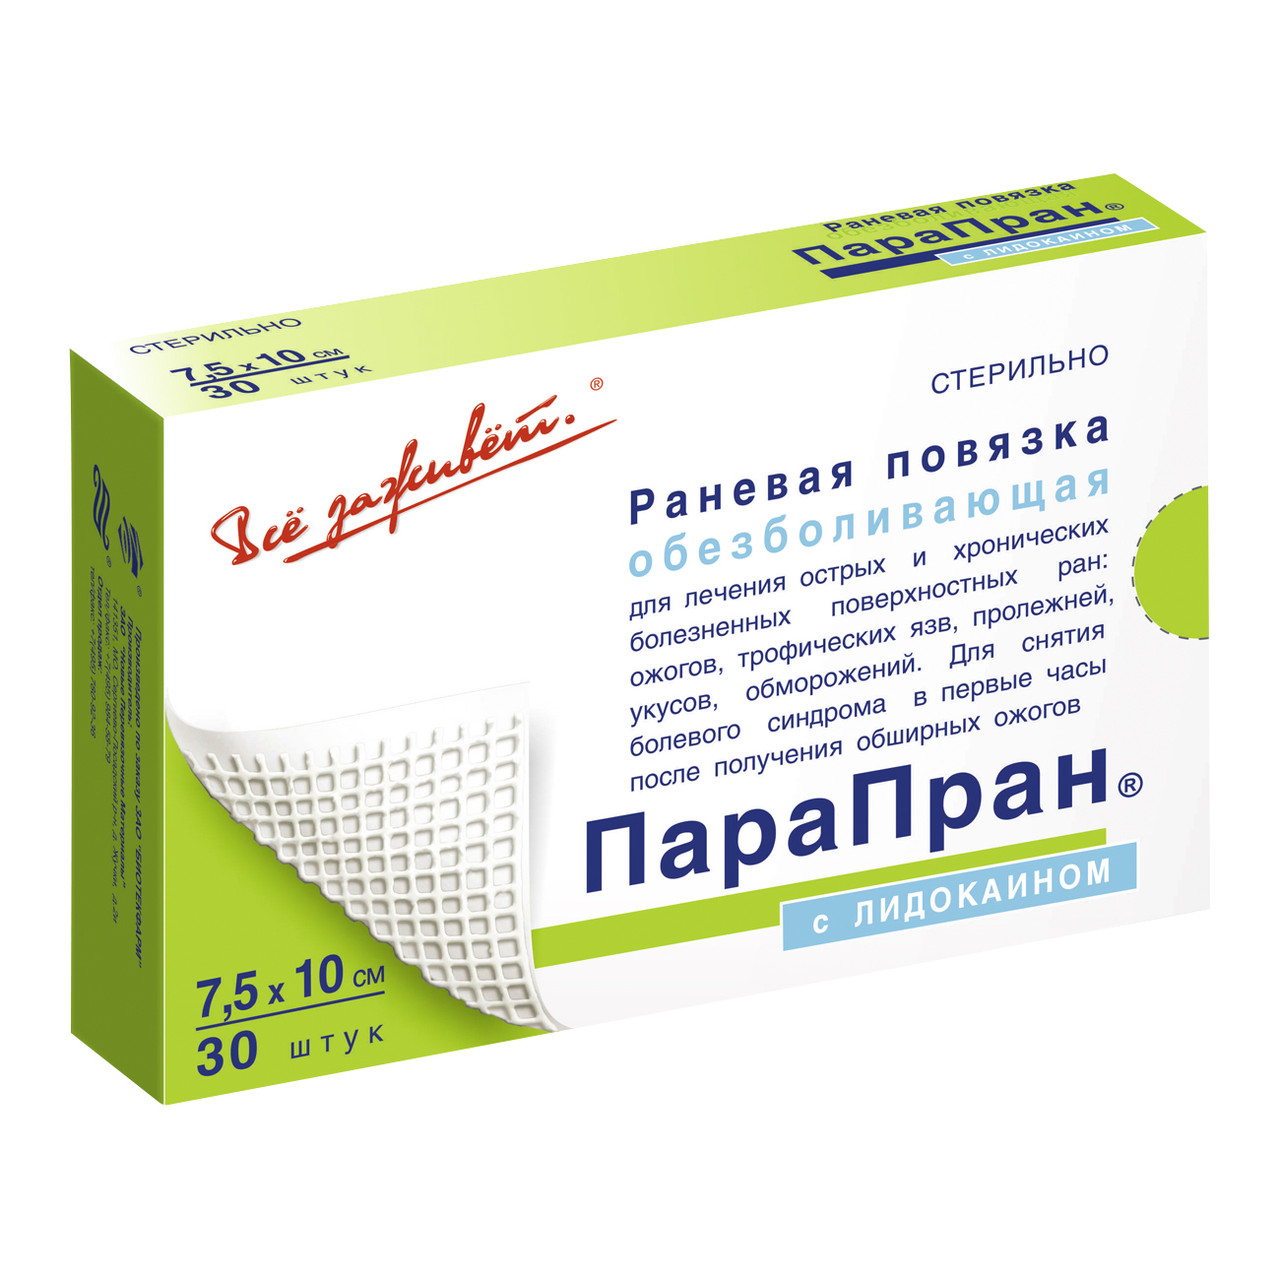 ПараПран с лидокаином - обезболивающая раневая повязка 7,5x10 см (цена за 1 штуку)